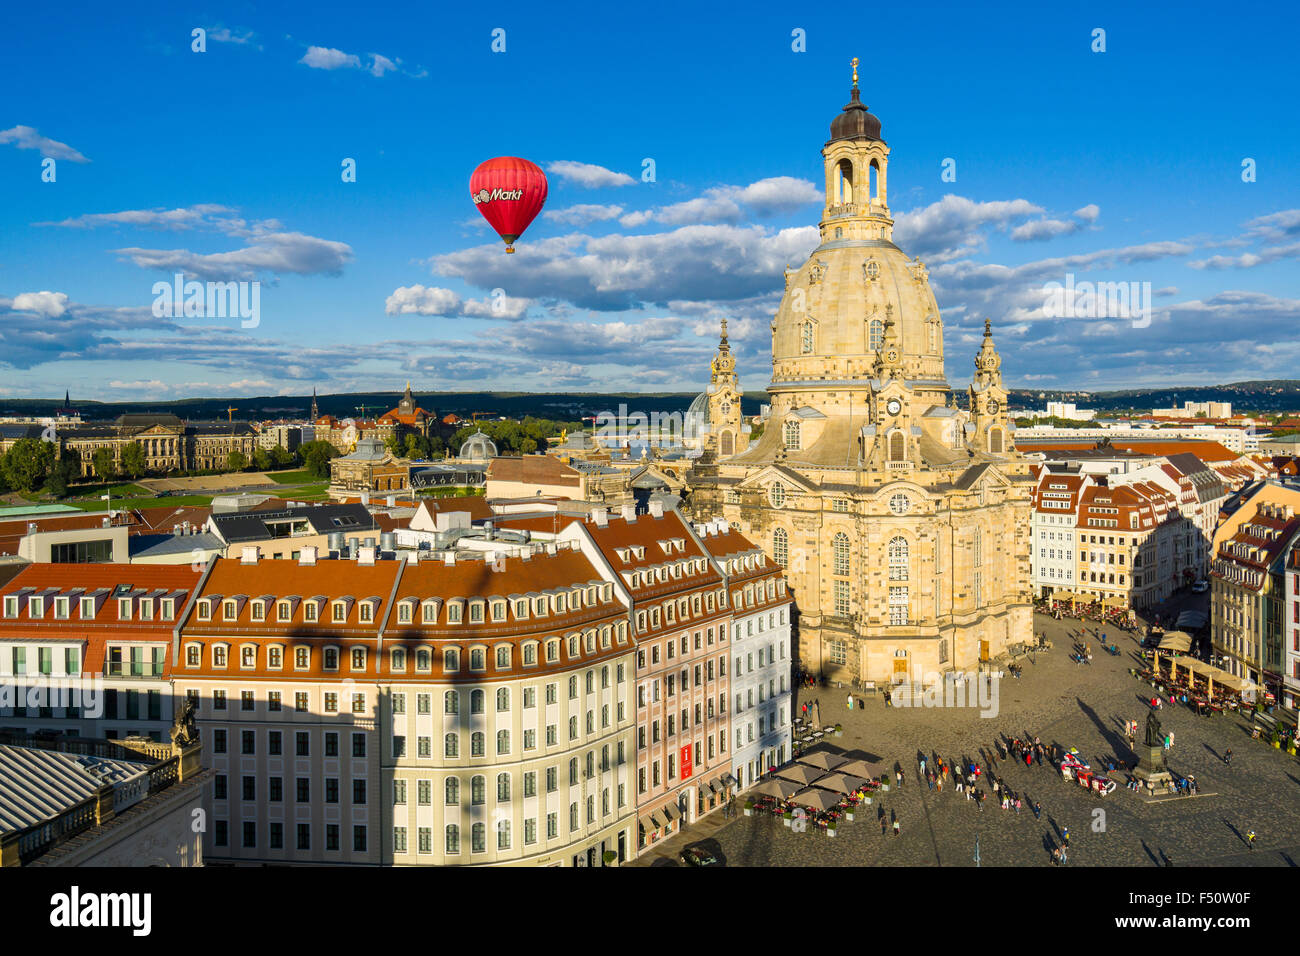 Une vue panoramique sur la neumarkt et l'église église notre dame dans la vieille partie de la ville, un ballon rouge n'est pas Banque D'Images